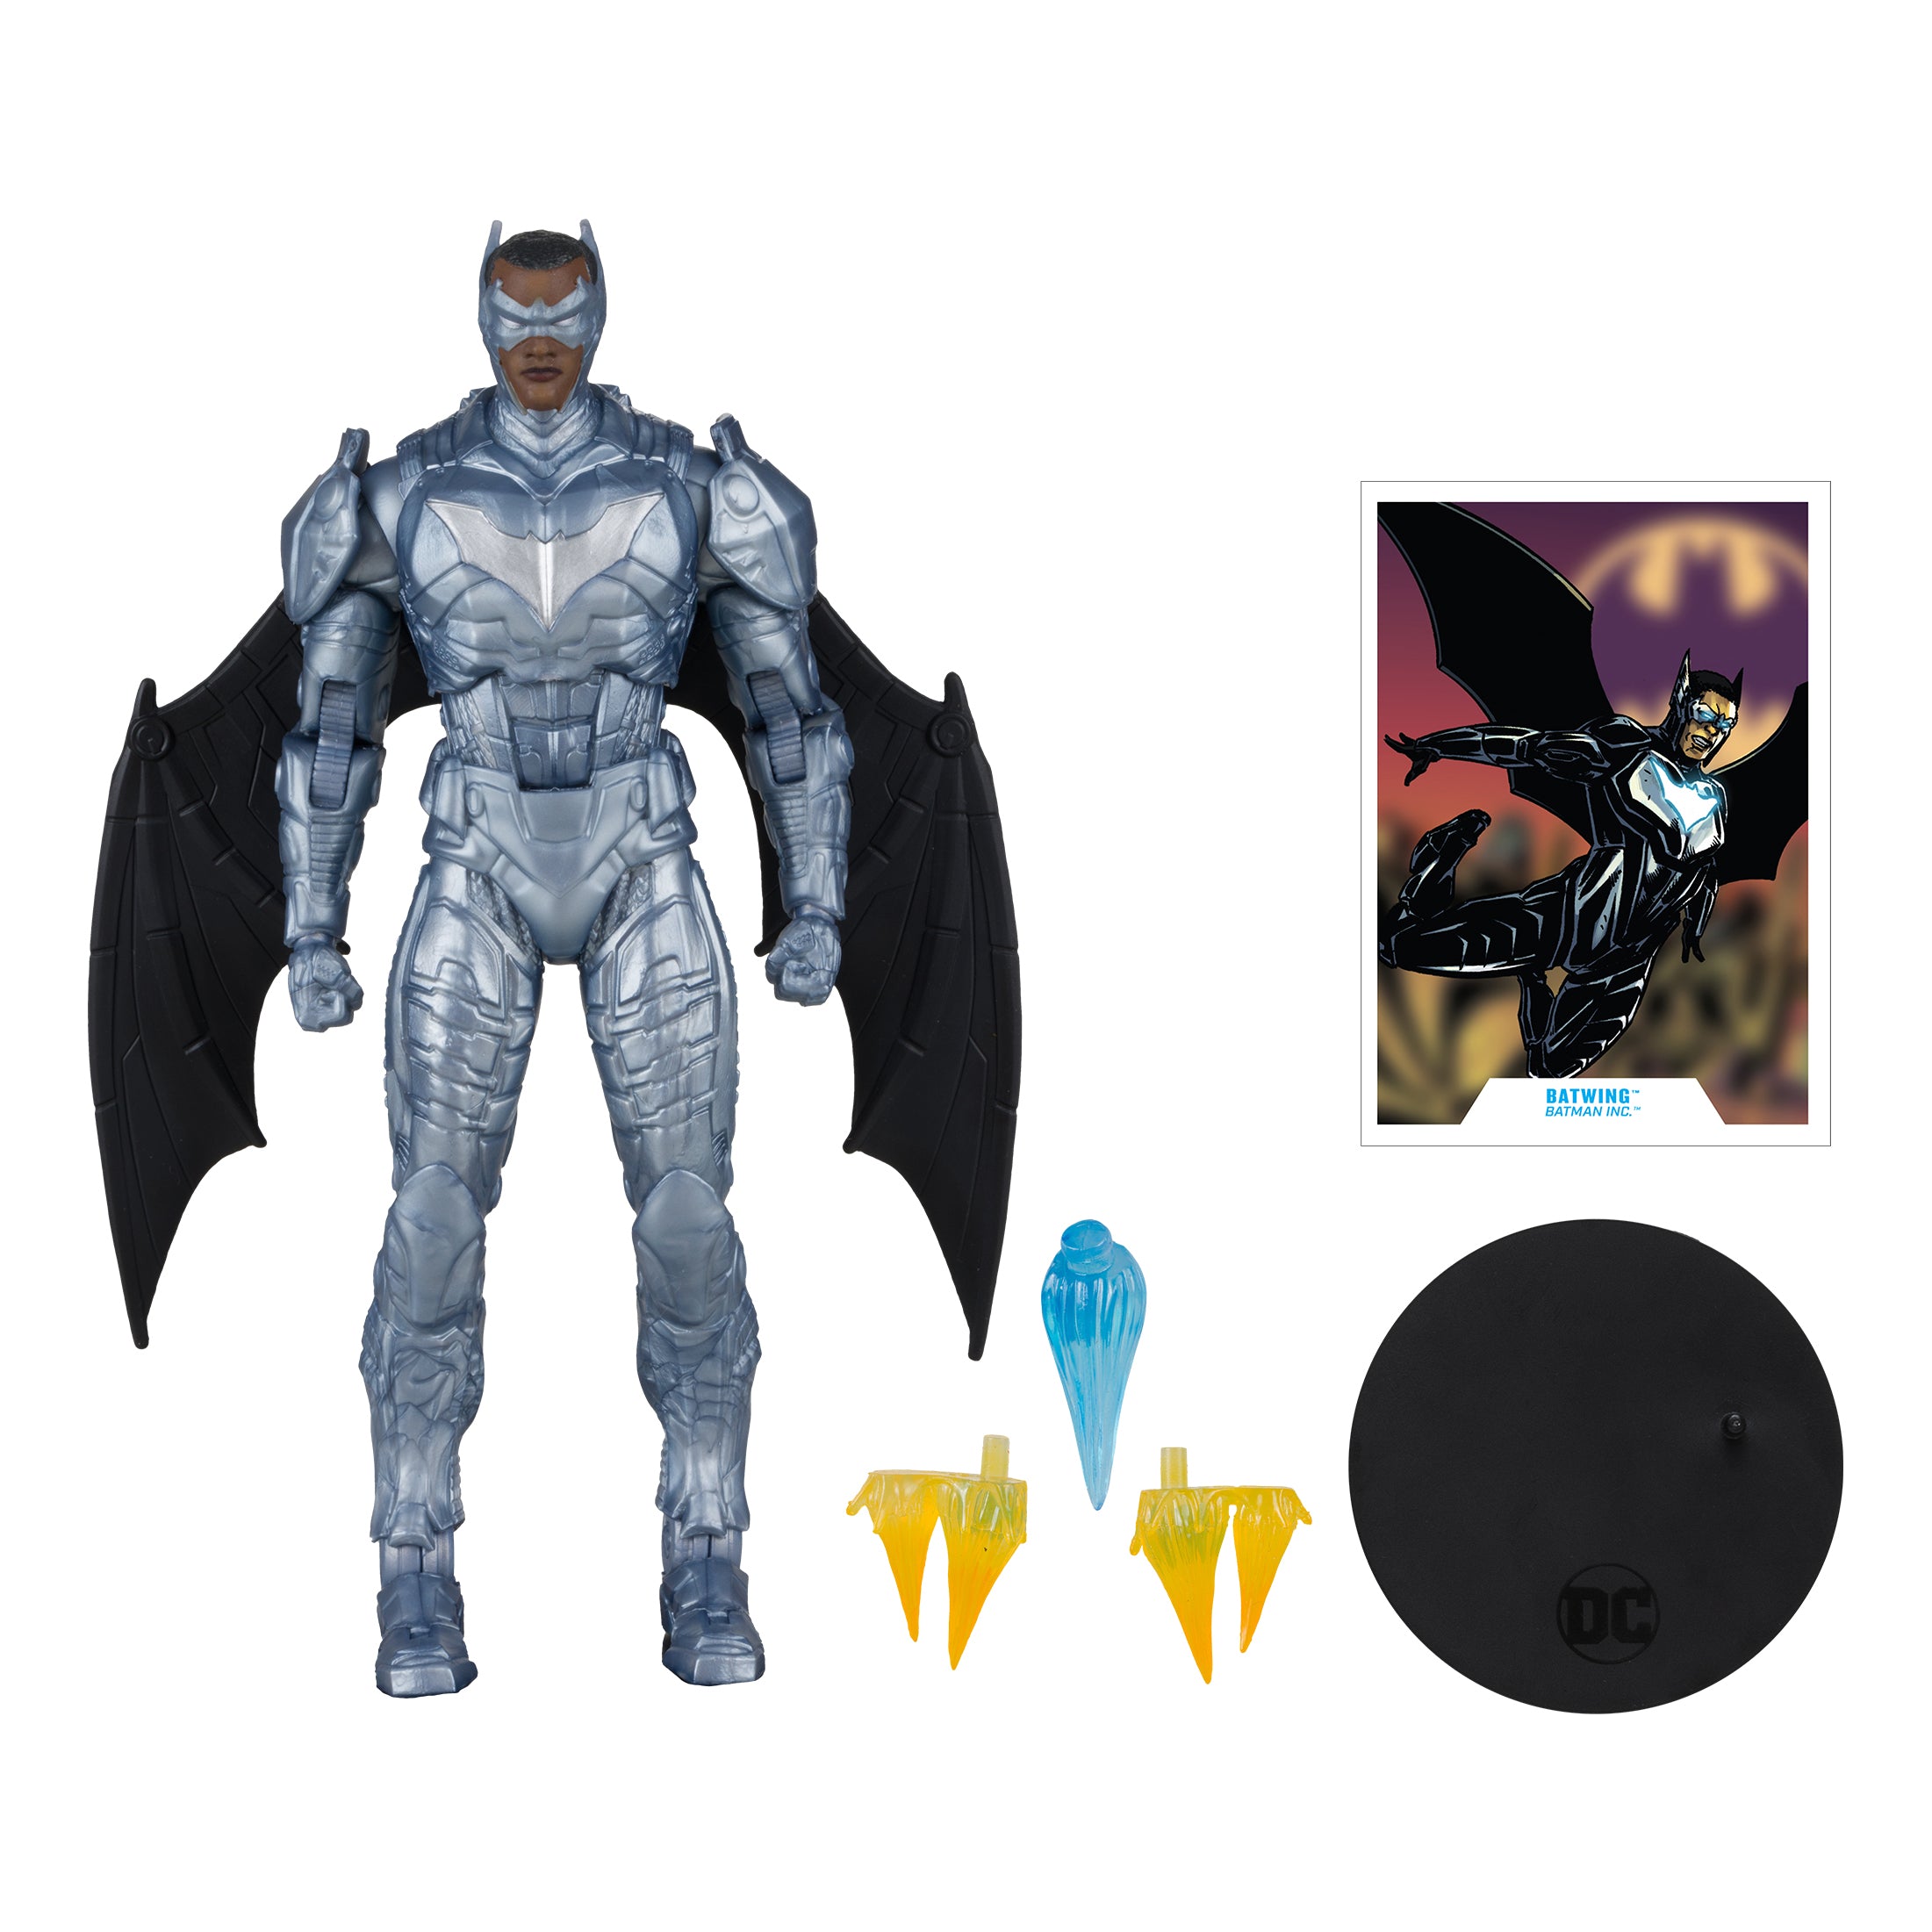 McFarlane Figura de Accion: DC Comics New 52 - Batwing 7 Pulgadas